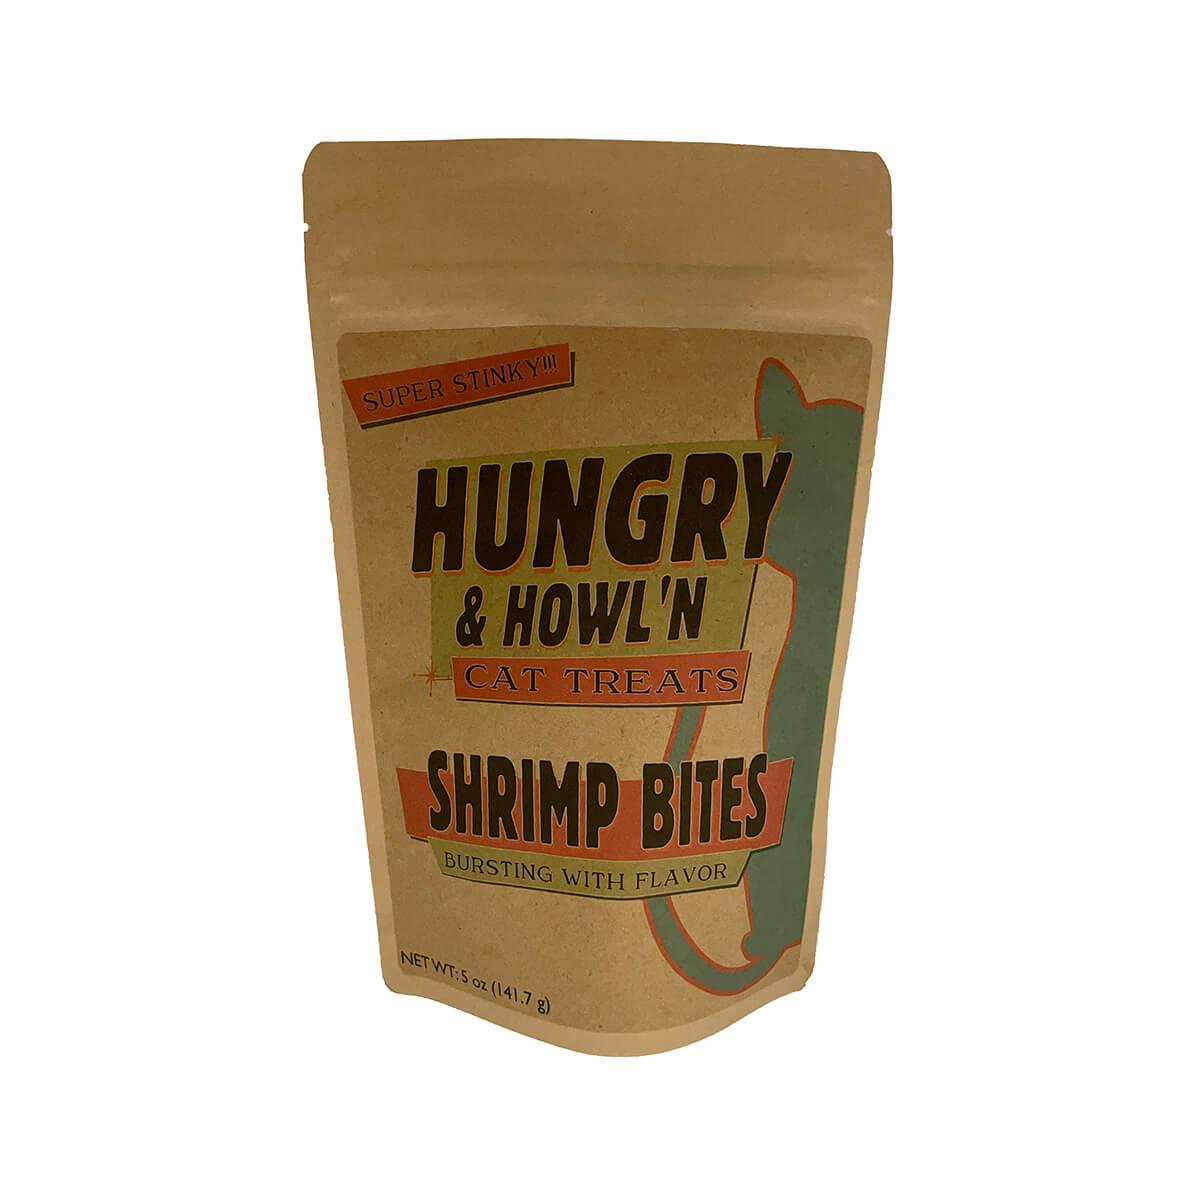  Shrimp Bites Cat Treats